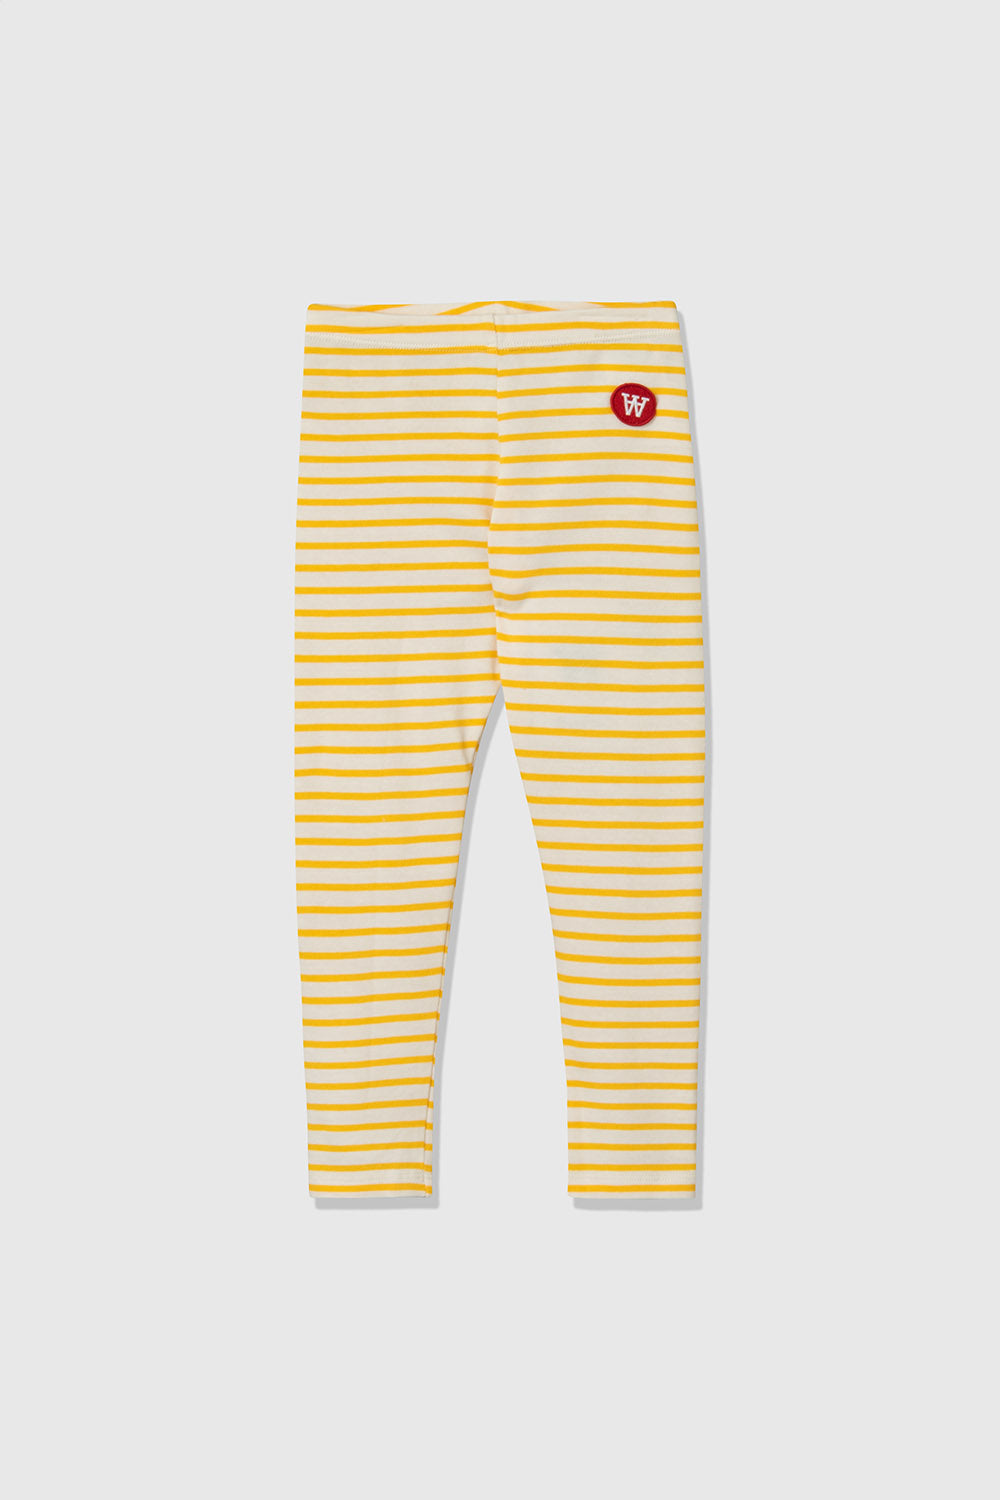 Off-white/yellow stripes